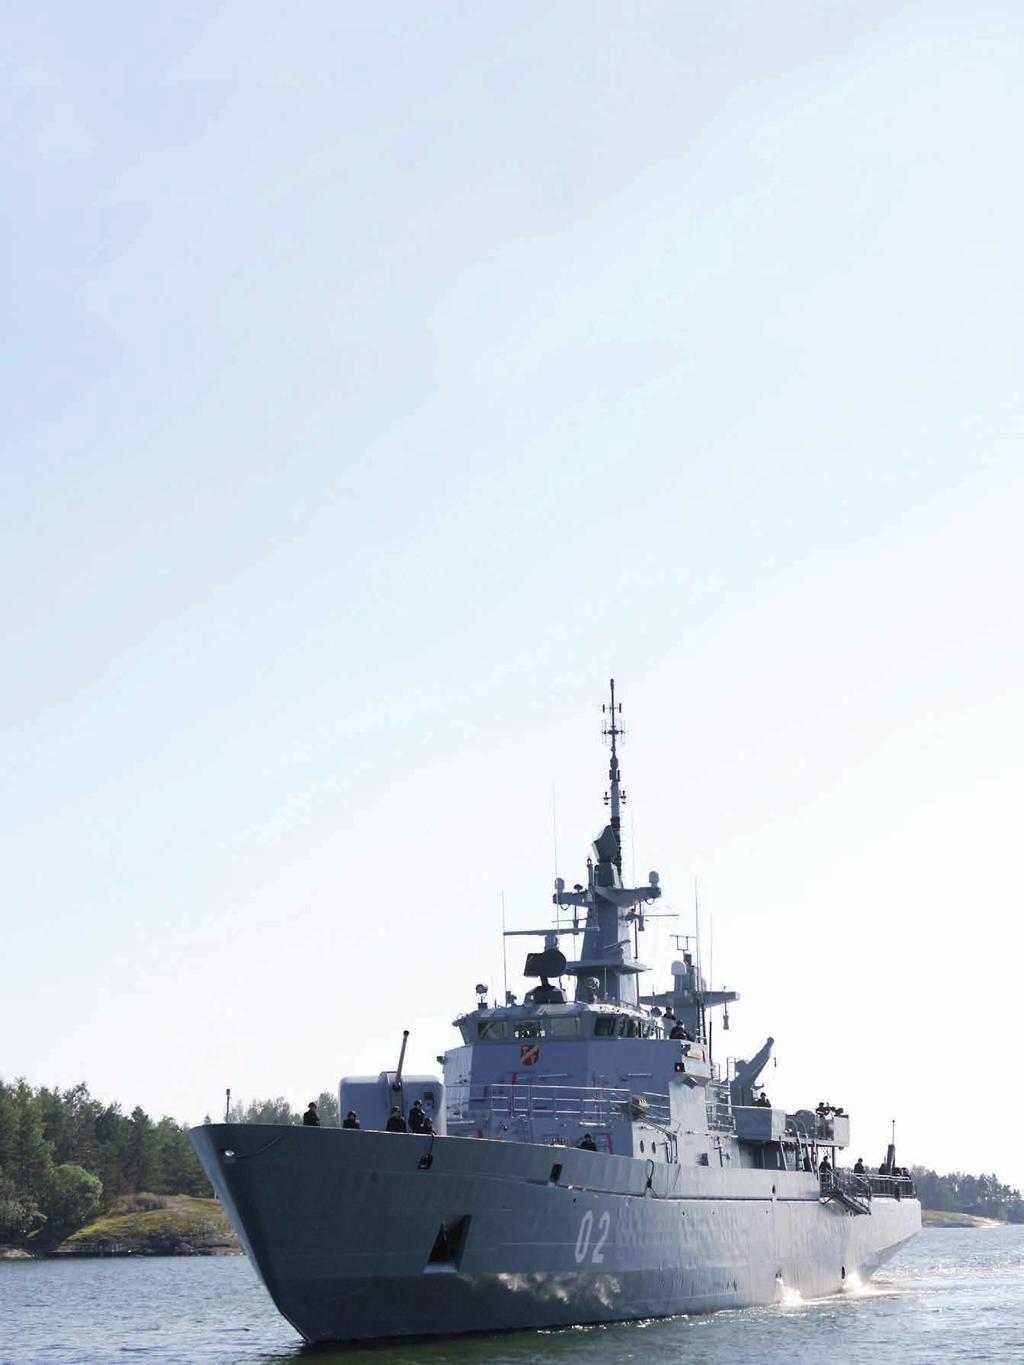 Merivoimat Merivoimien tehtävät Suomen sotilaalliseksi puolustamiseksi ovat merialueiden valvonta ja alueloukkauksien torjuminen, meriyhteyksien turvaaminen sekä merellisten hyökkäysten torjunta.